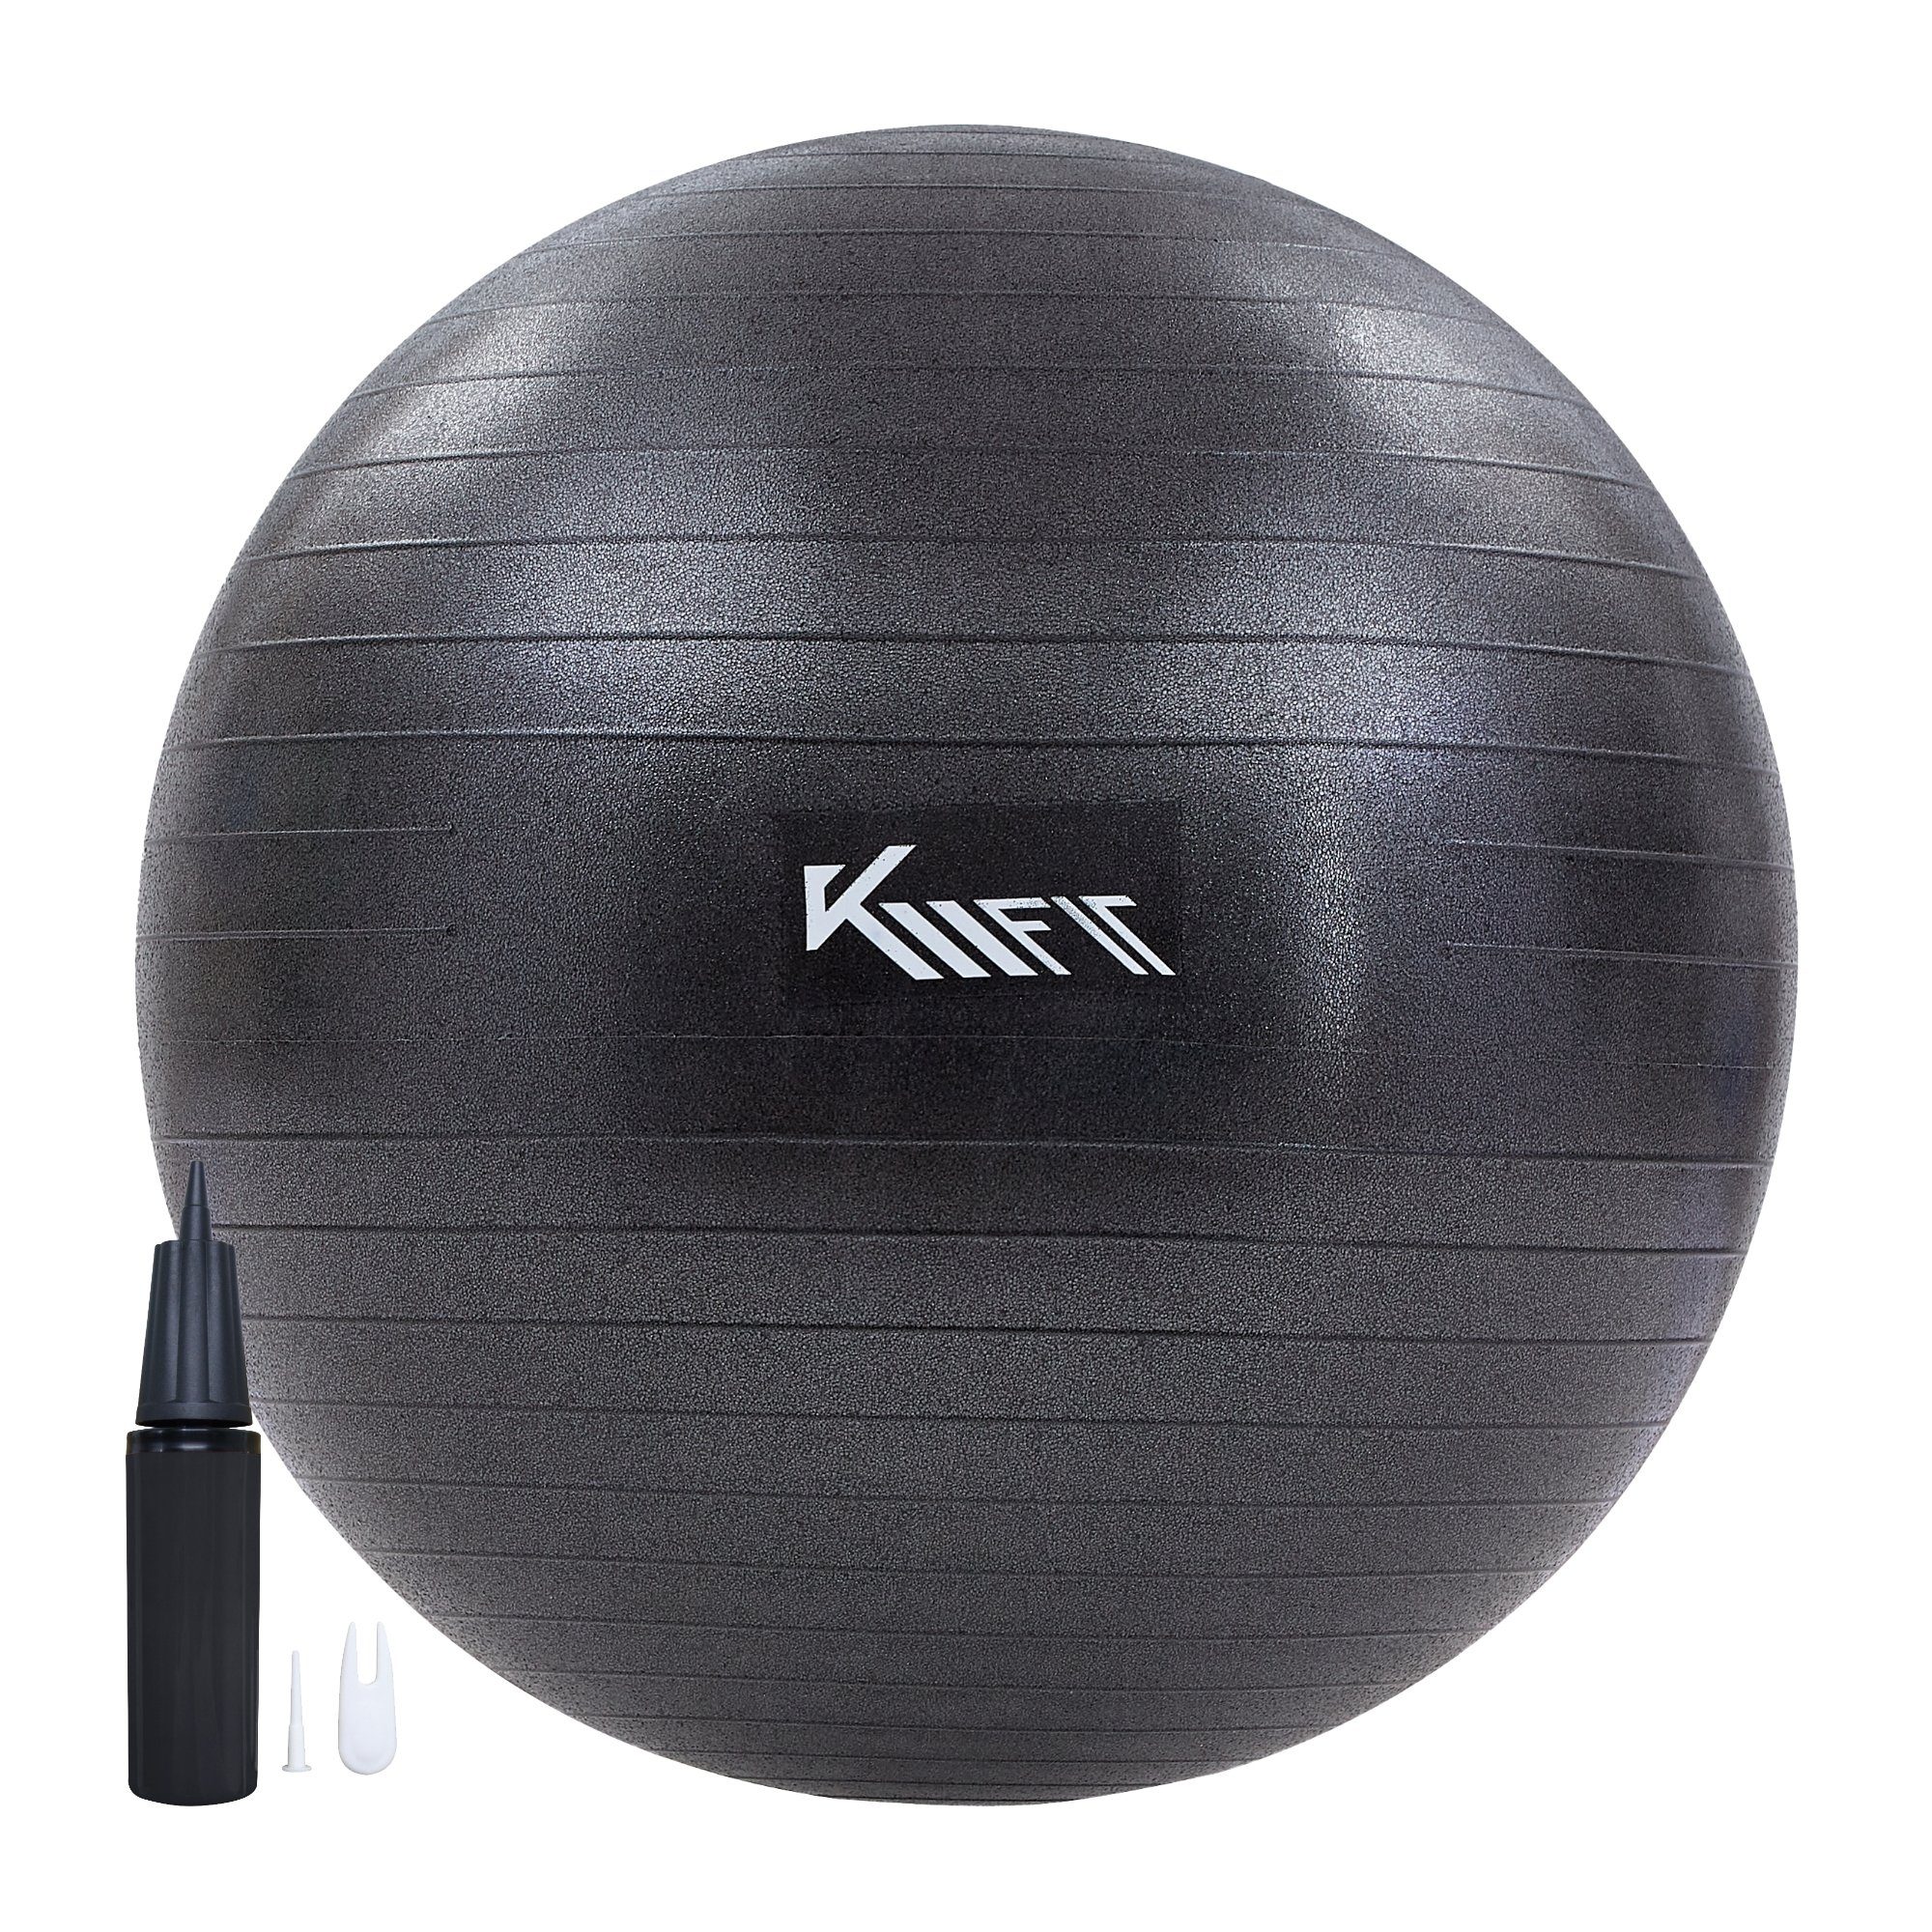 KM - Fit Gymnastikball Trainingsball Sitzball für Fitness,Yoga,Gymnastik 75 cm (schwarz, mit Luft-Pumpe), Max. Belastbarkeit: 300 kg